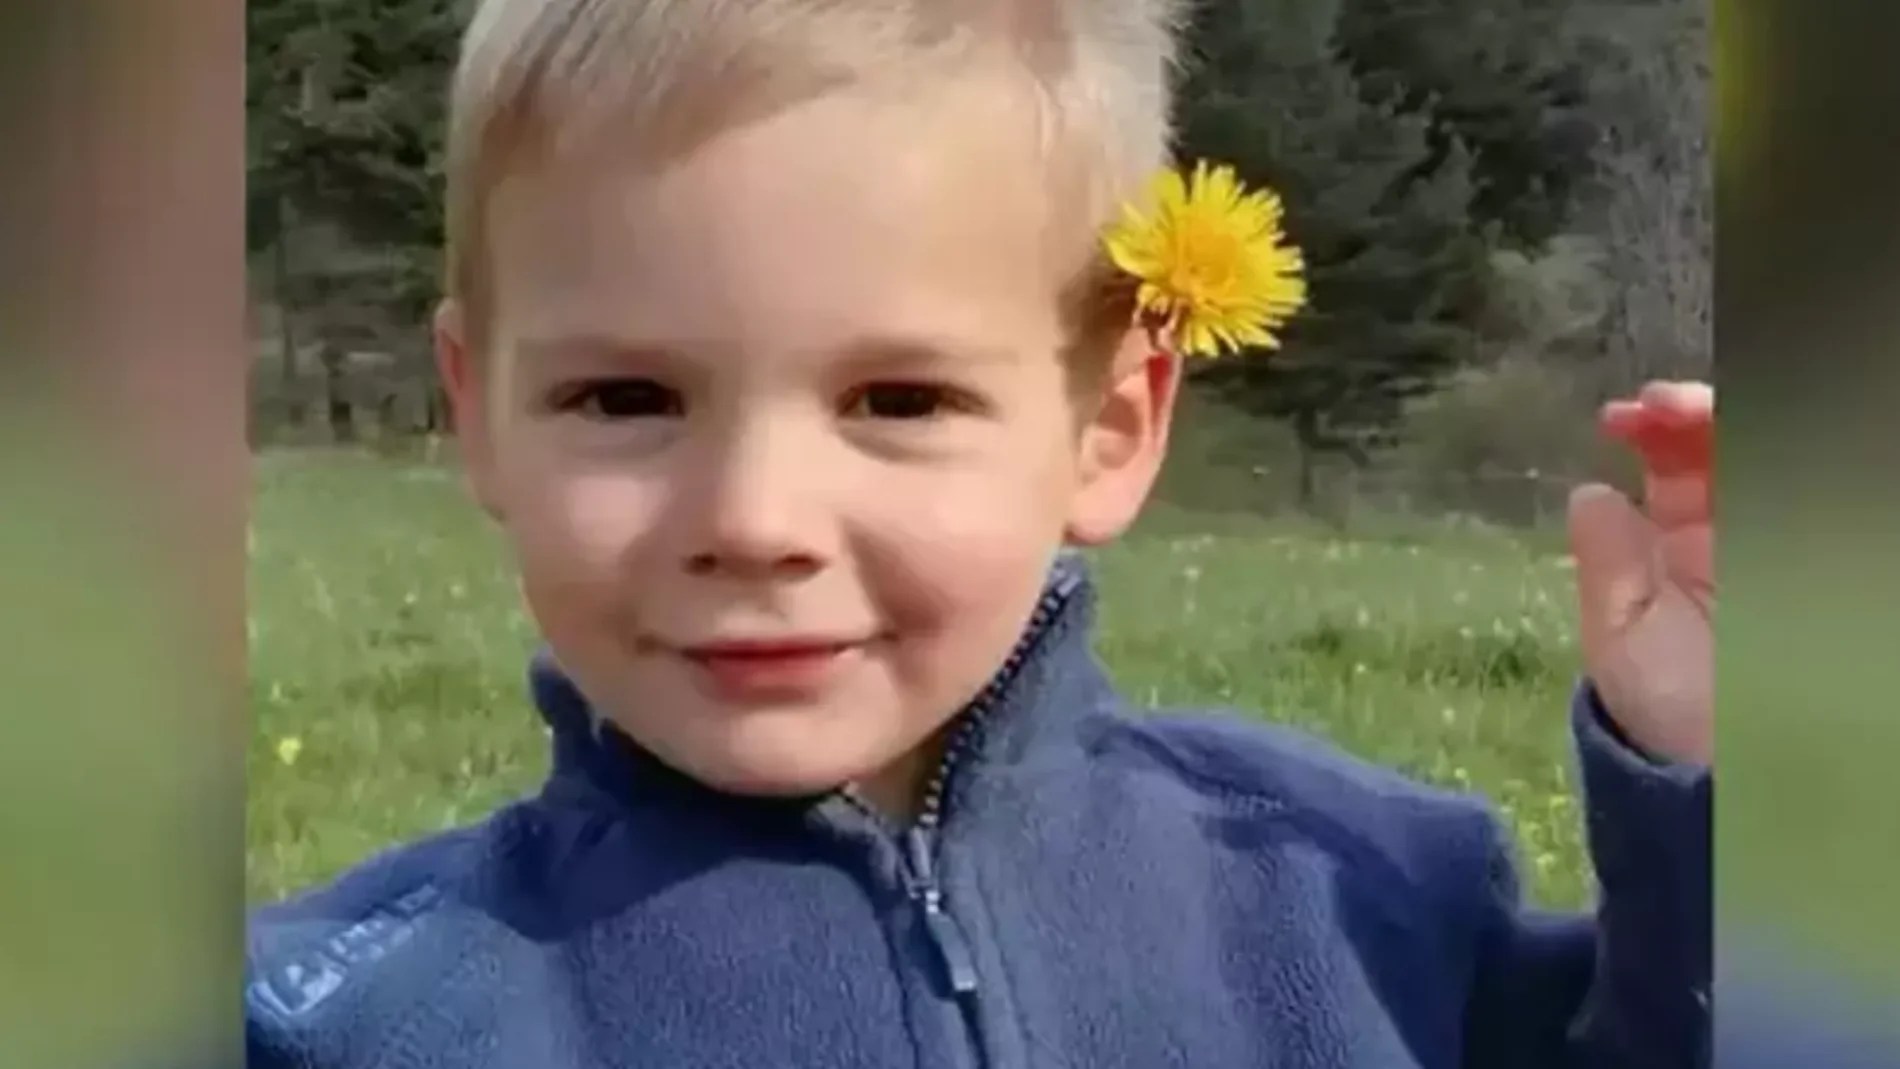 Émile, el niño desaparecido en Francia hace ocho meses, podría seguir vivo